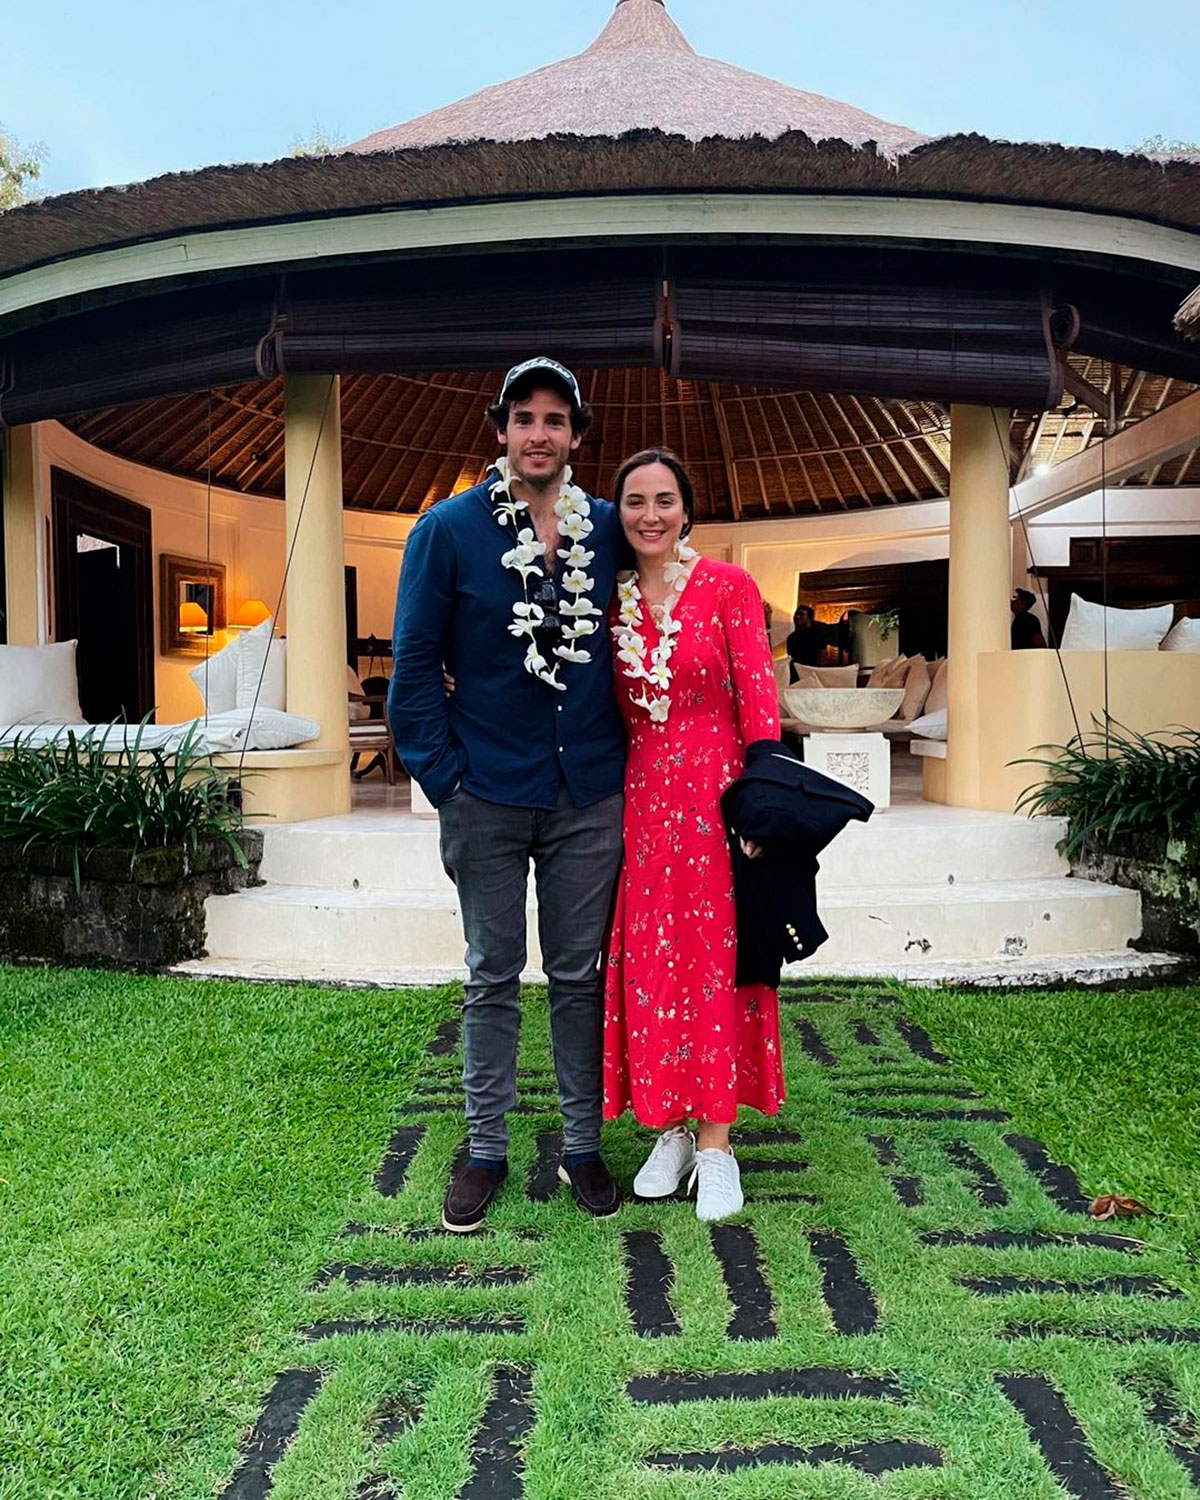 Así es el resort de lujo en el que se alojan Tamara Falcó e Íñigo Onieva en Bali por casi 3.000 euros la noche